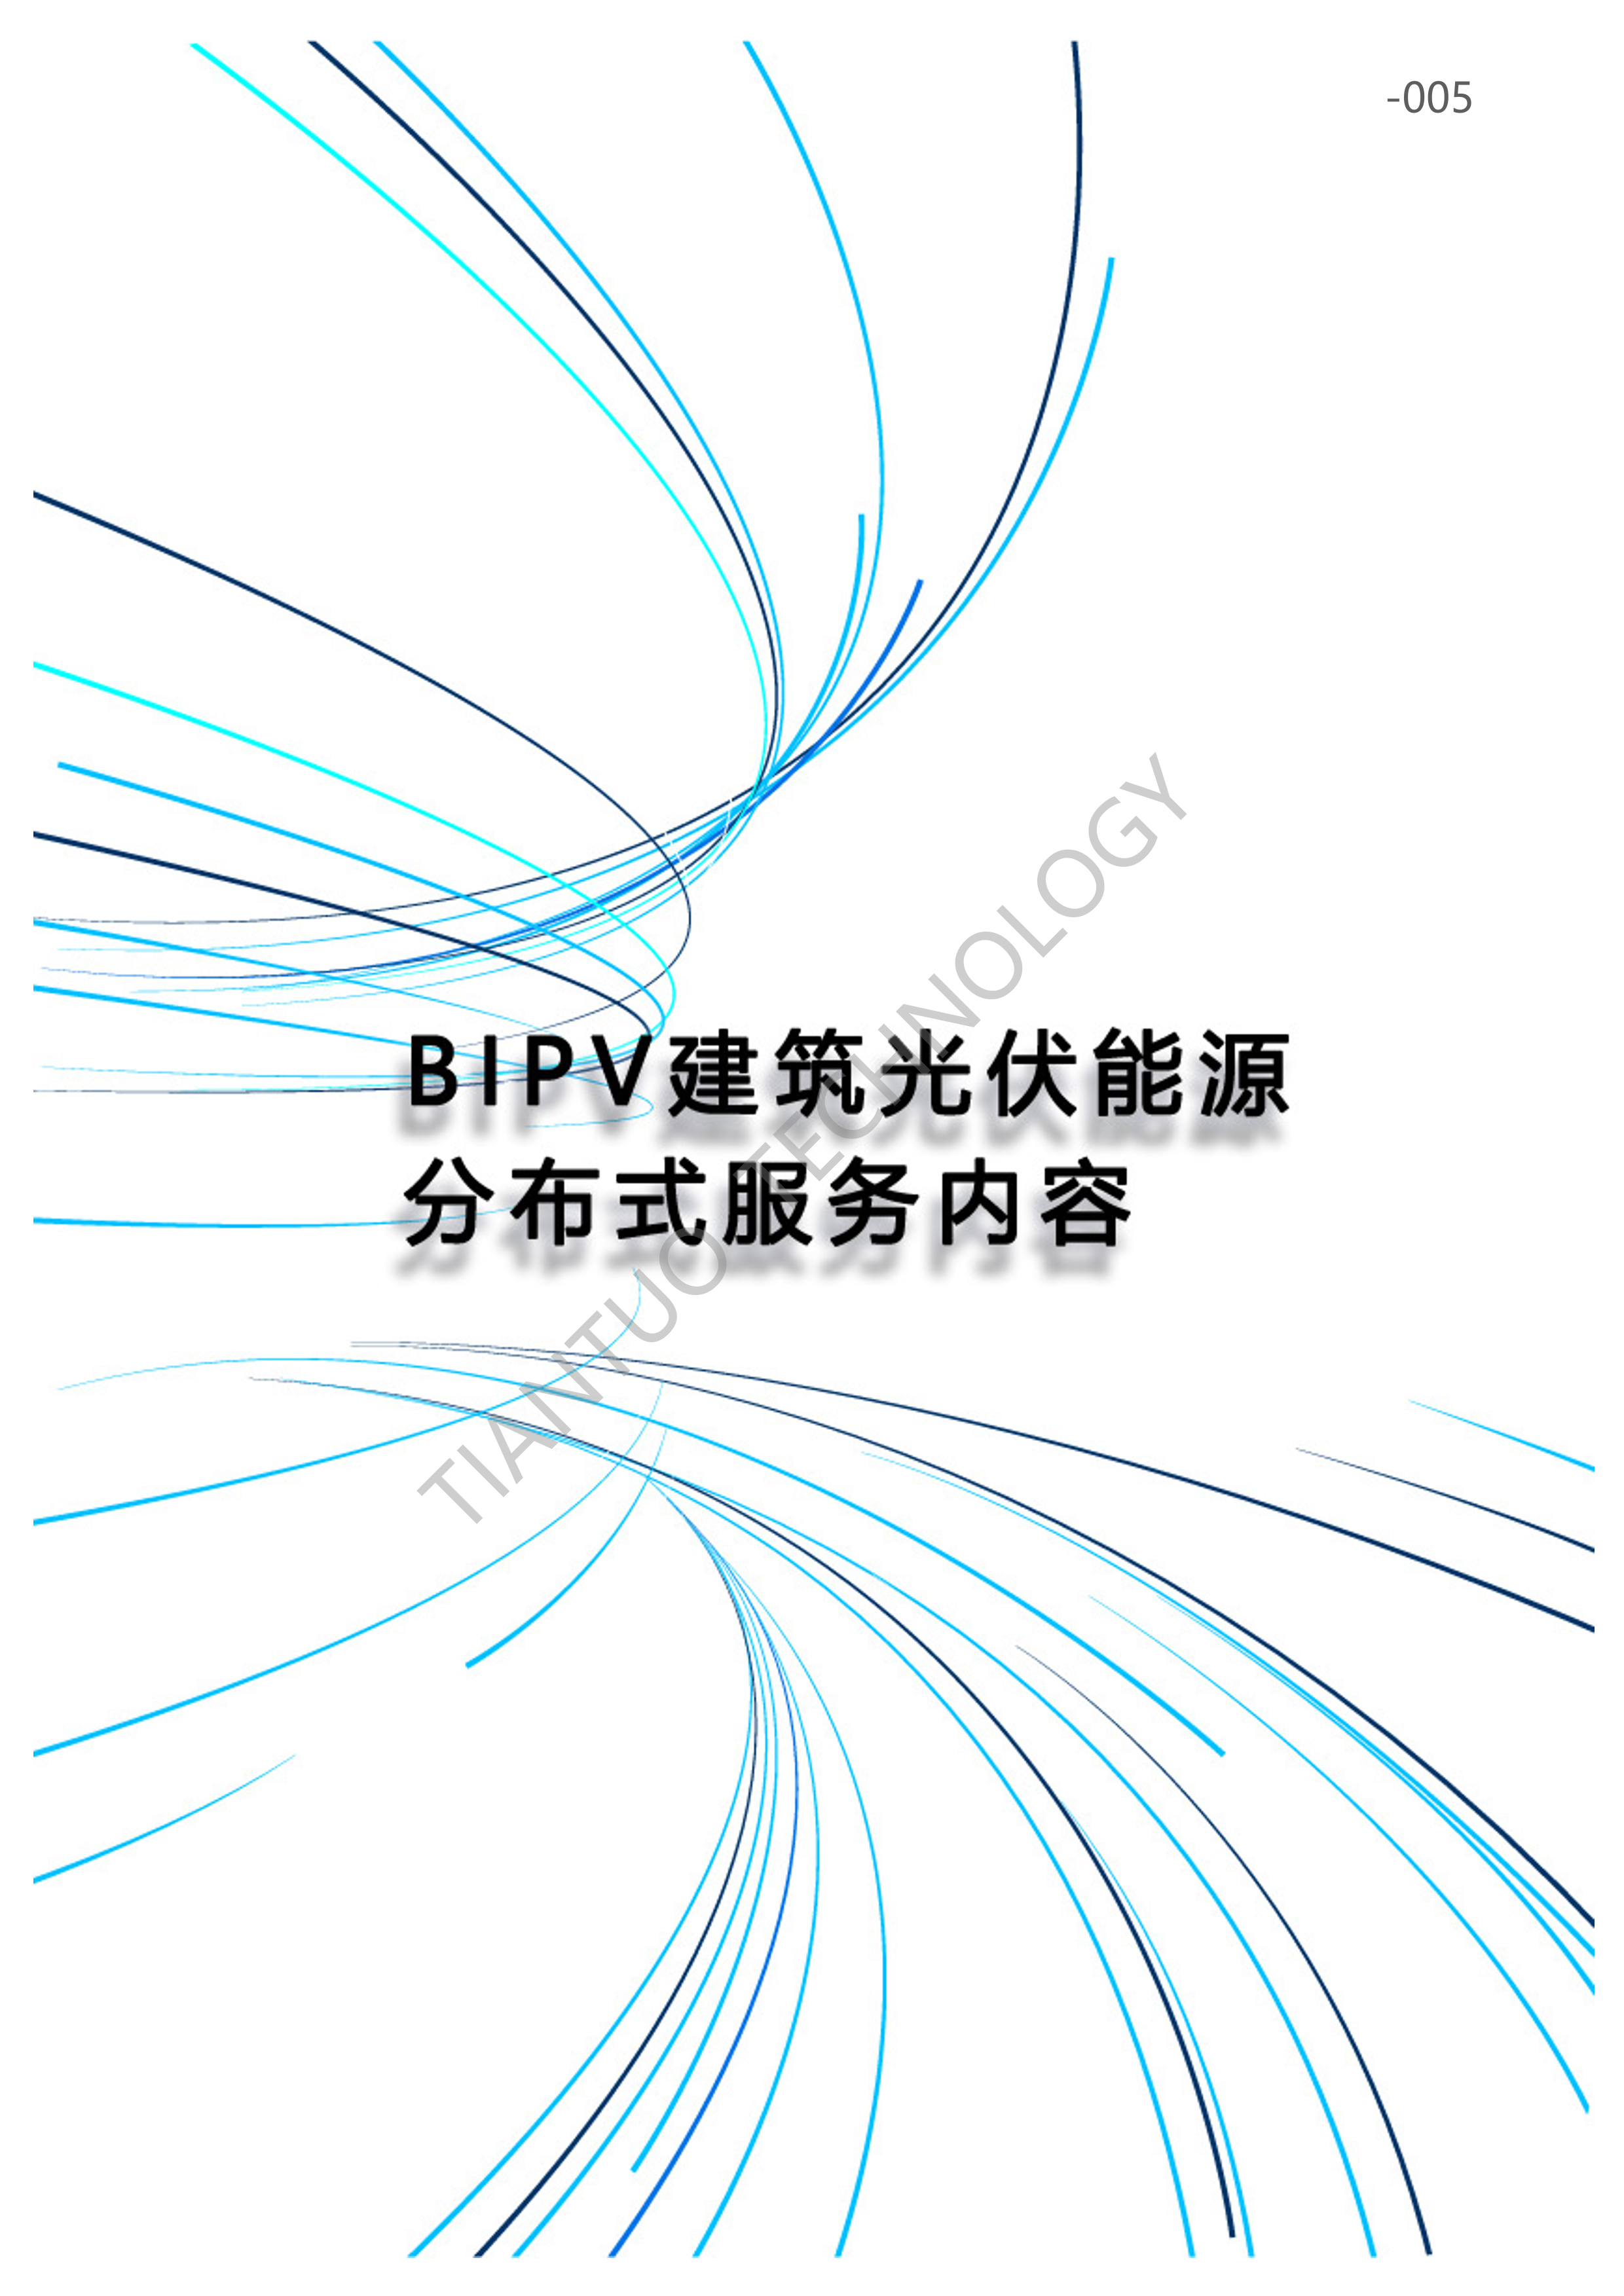 天托科技_BIPV分布式光伏发电技术手册5.0(水印版)_8.png